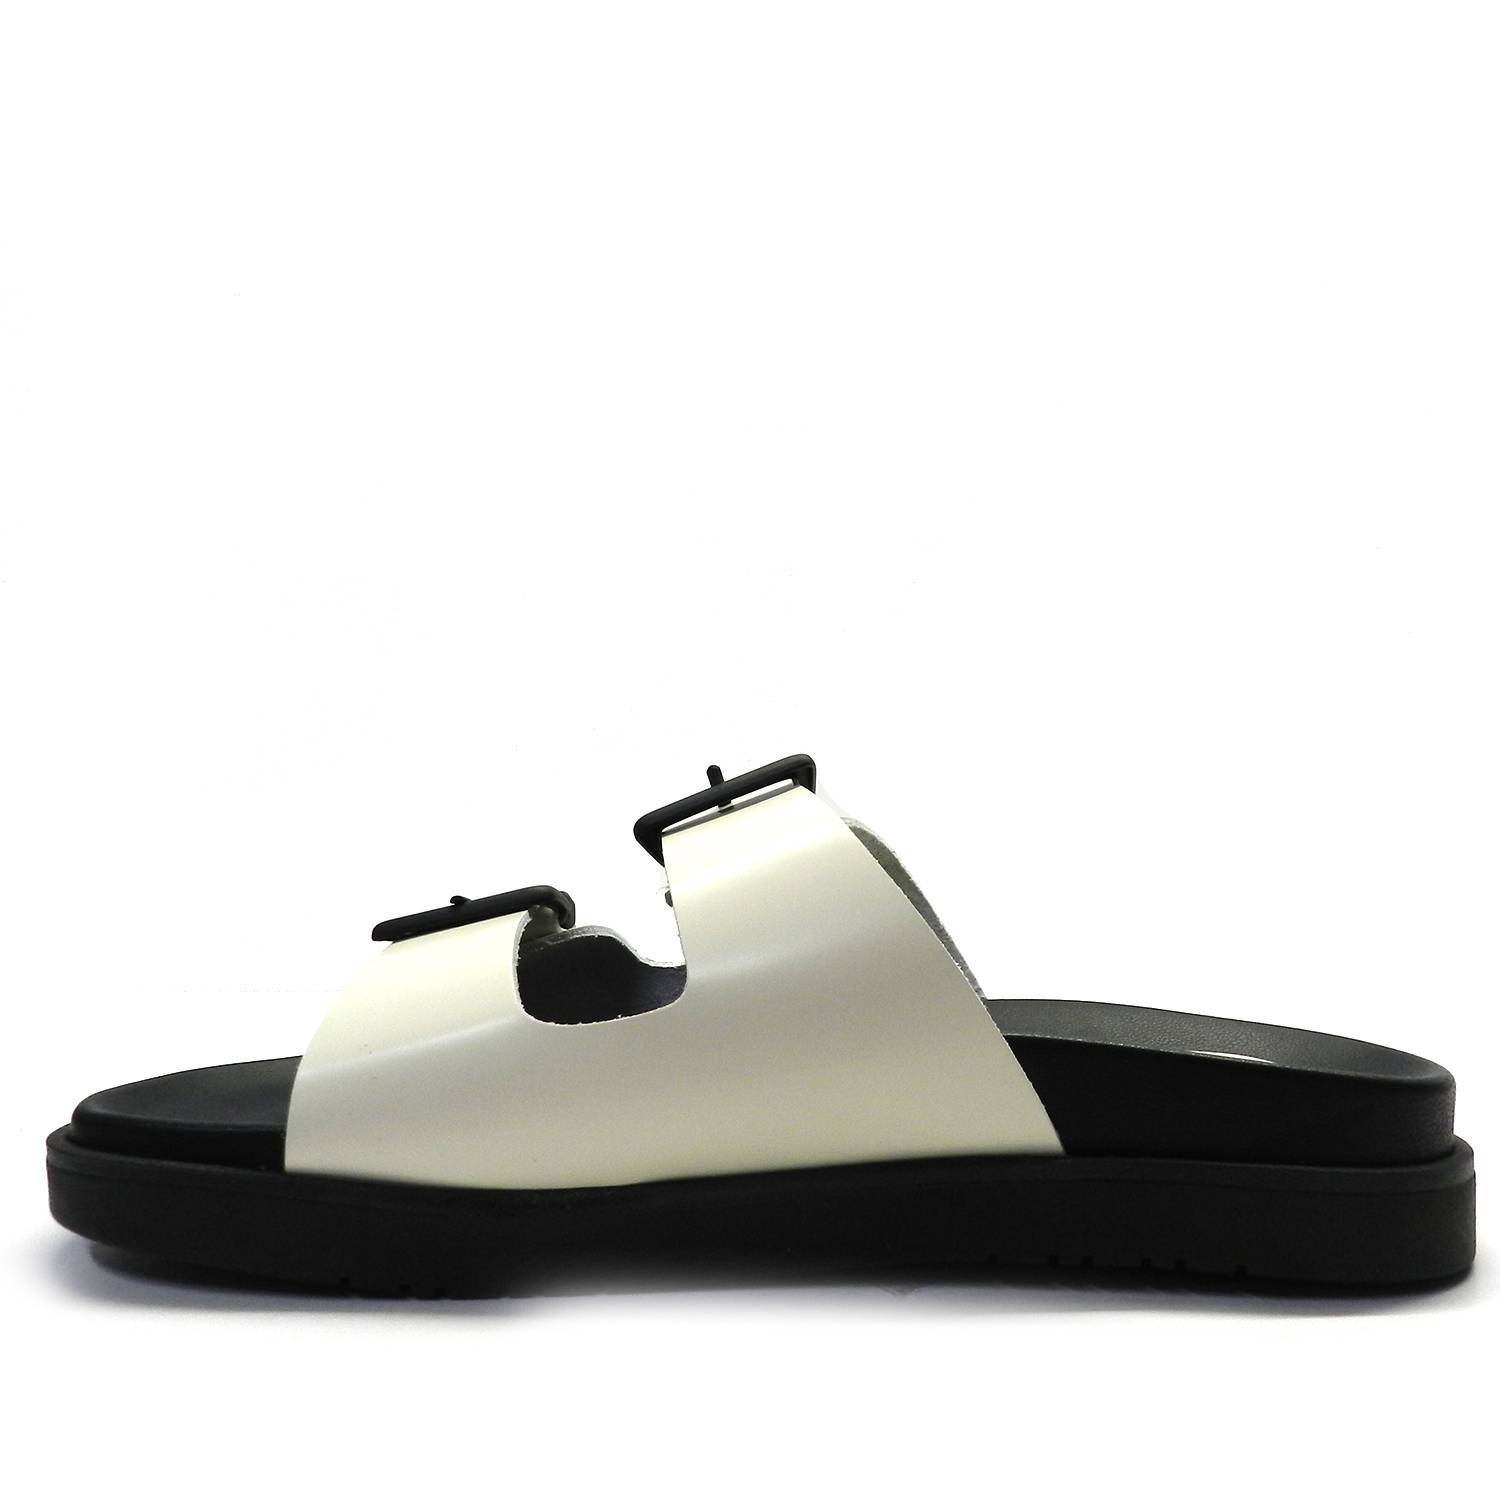 Sandalia de la marca Escala modelo Aknes en color hielo. Sandalia plana con doble hebilla y suela anatómica en color negro.